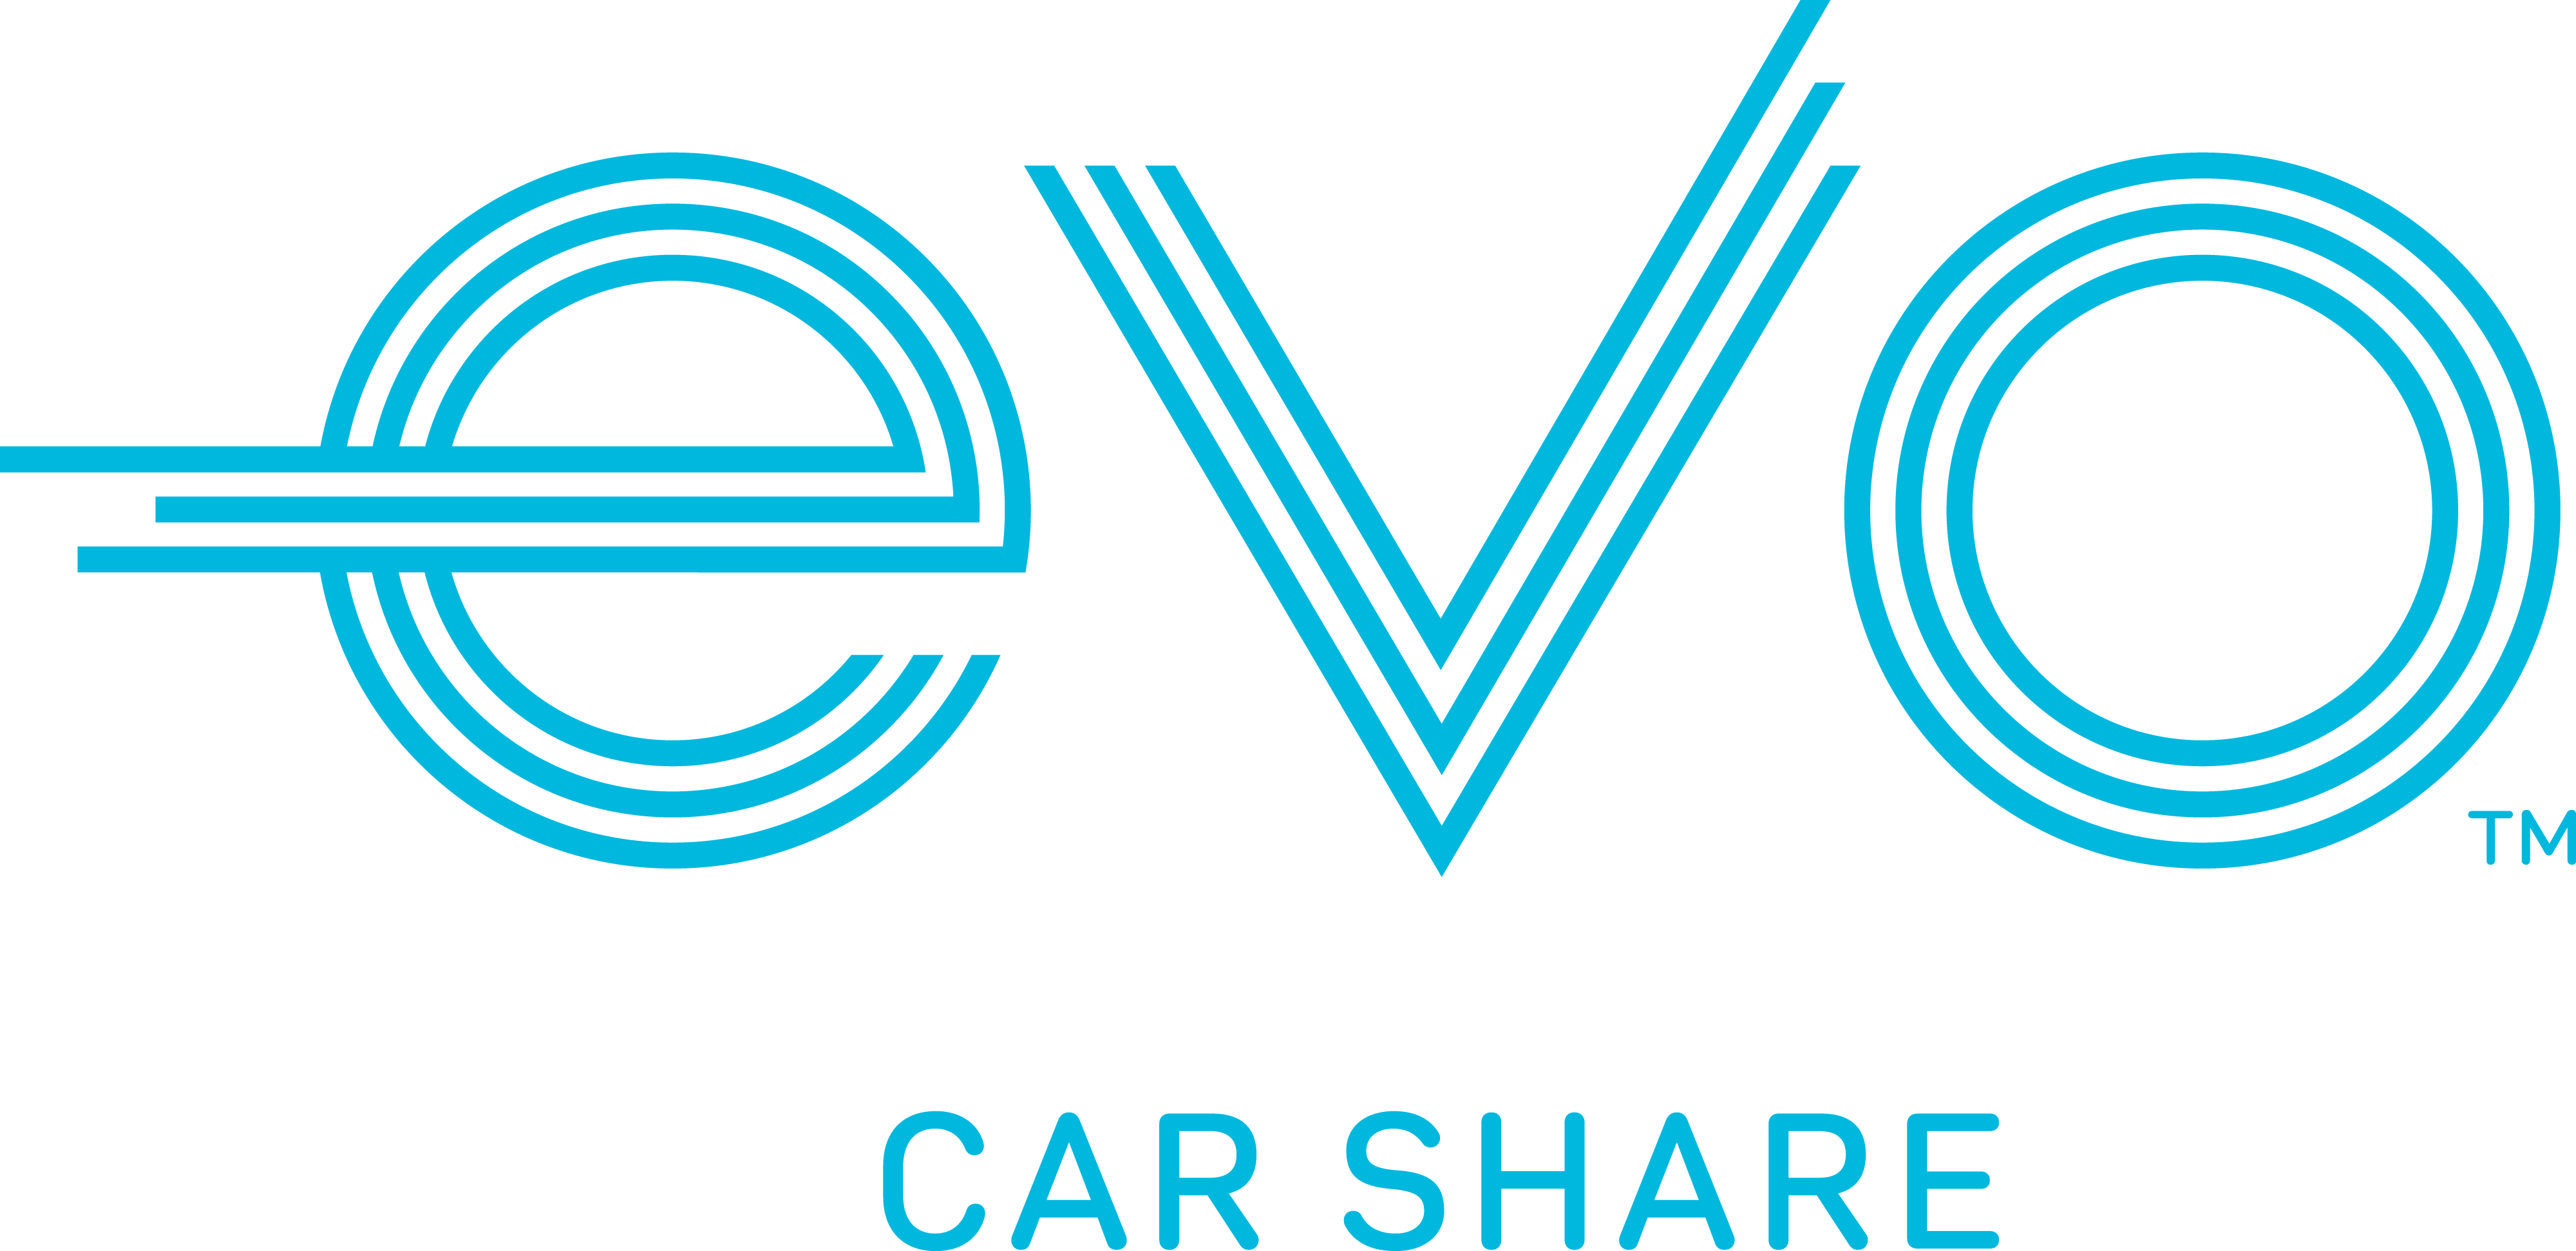 Evo Car Share - Logo